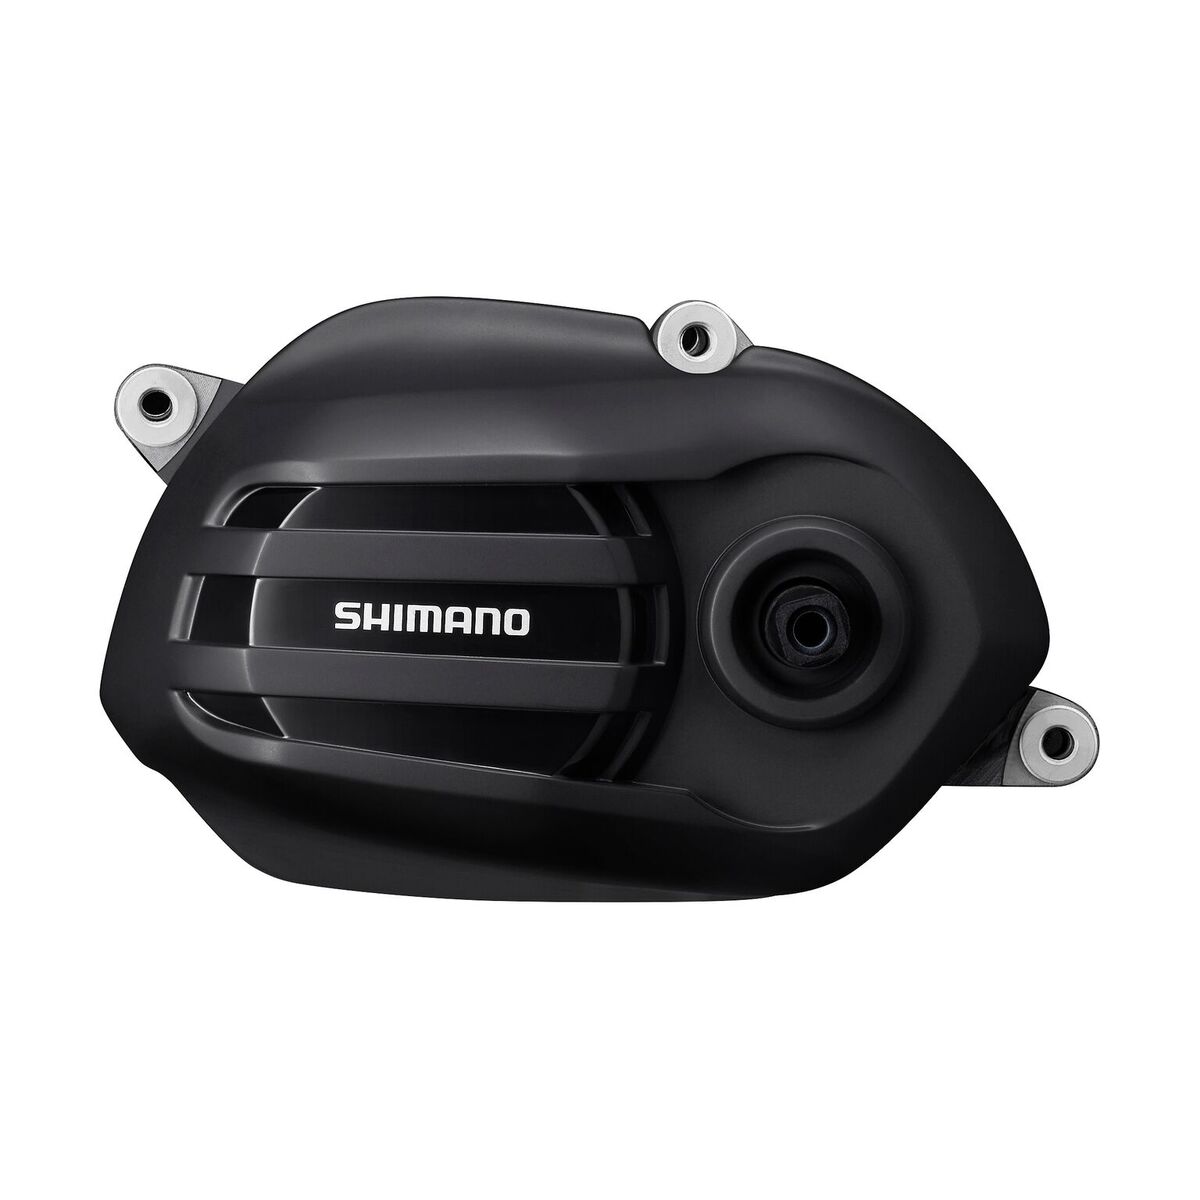 Der Shimano Steps E5000 Antrieb ist Shimanos Antwort auf die Active Line 2018 - bietet gleich viel Leistung bei rund 400 g weniger Gewicht